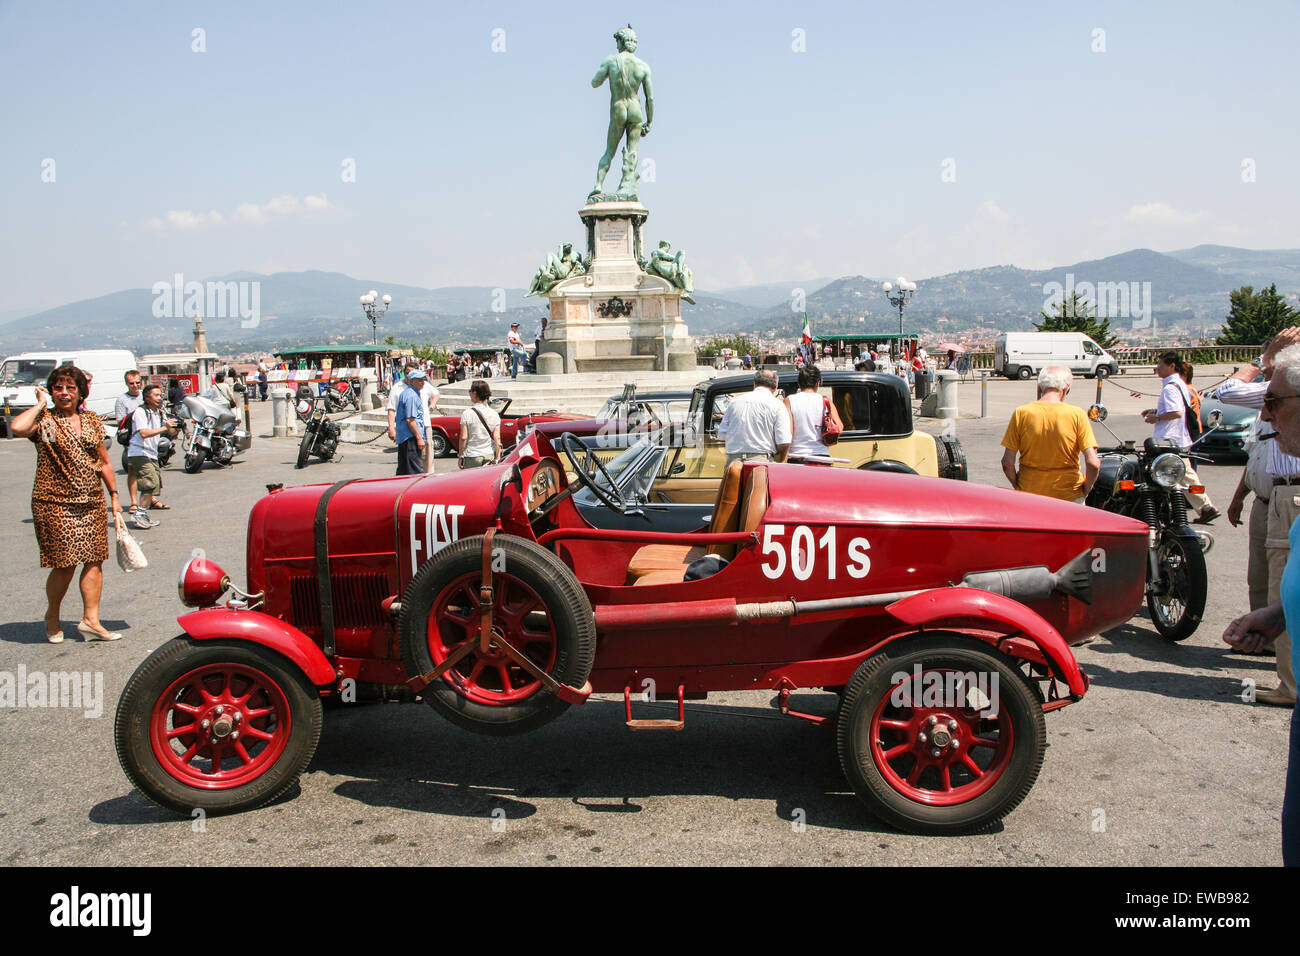 Vintage car, Fiat 501s à vintage voiture / moto rallye sur grande place Piazzale Michelangelo, avec des répliques de statue de David, overl Banque D'Images